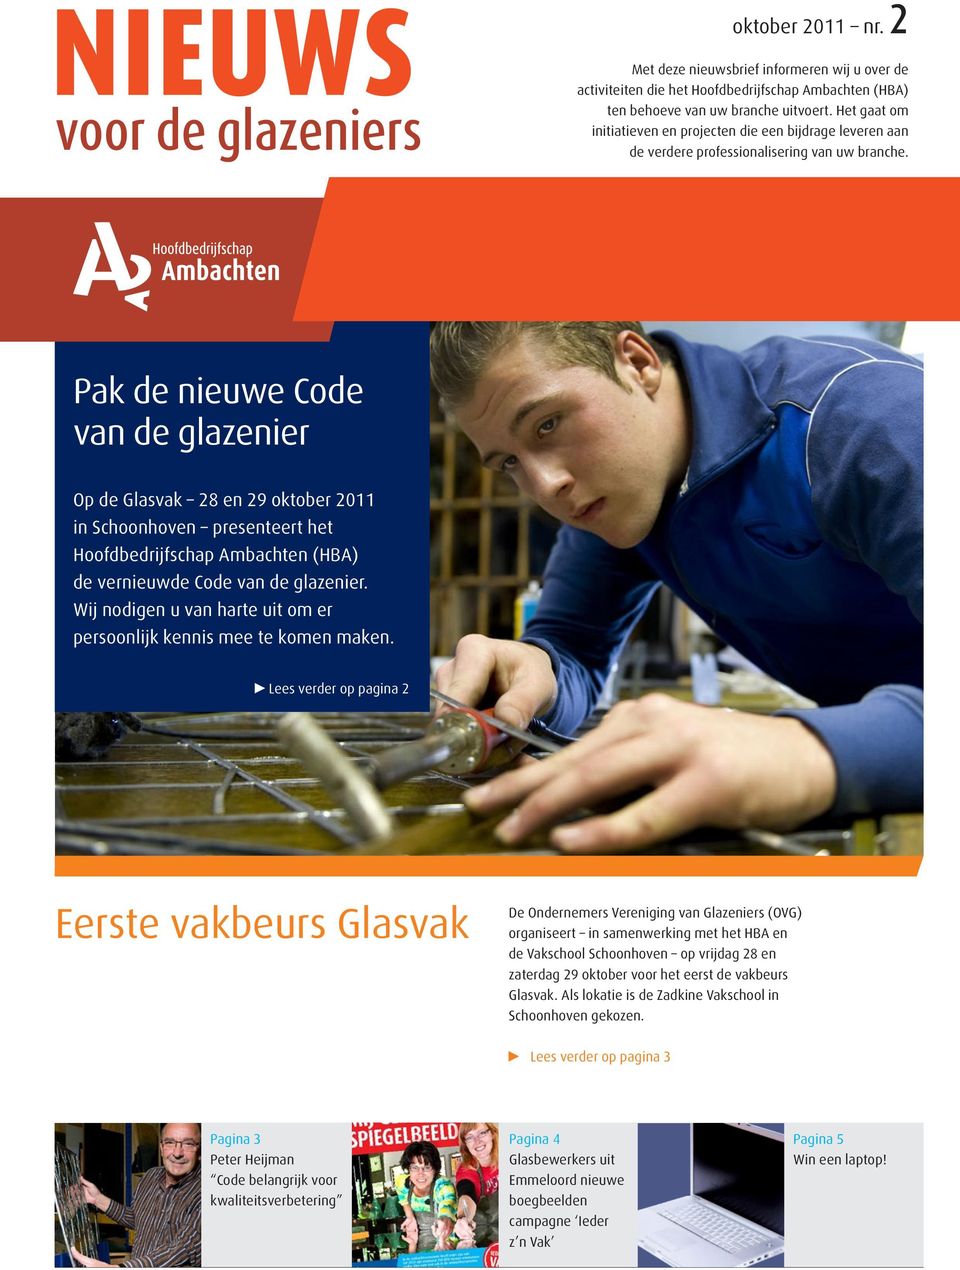 Pak de nieuwe Code van de glazenier Op de Glasvak 28 en 29 oktober 2011 in Schoonhoven presenteert het Hoofdbedrijfschap Ambachten (HBA) de vernieuwde Code van de glazenier.